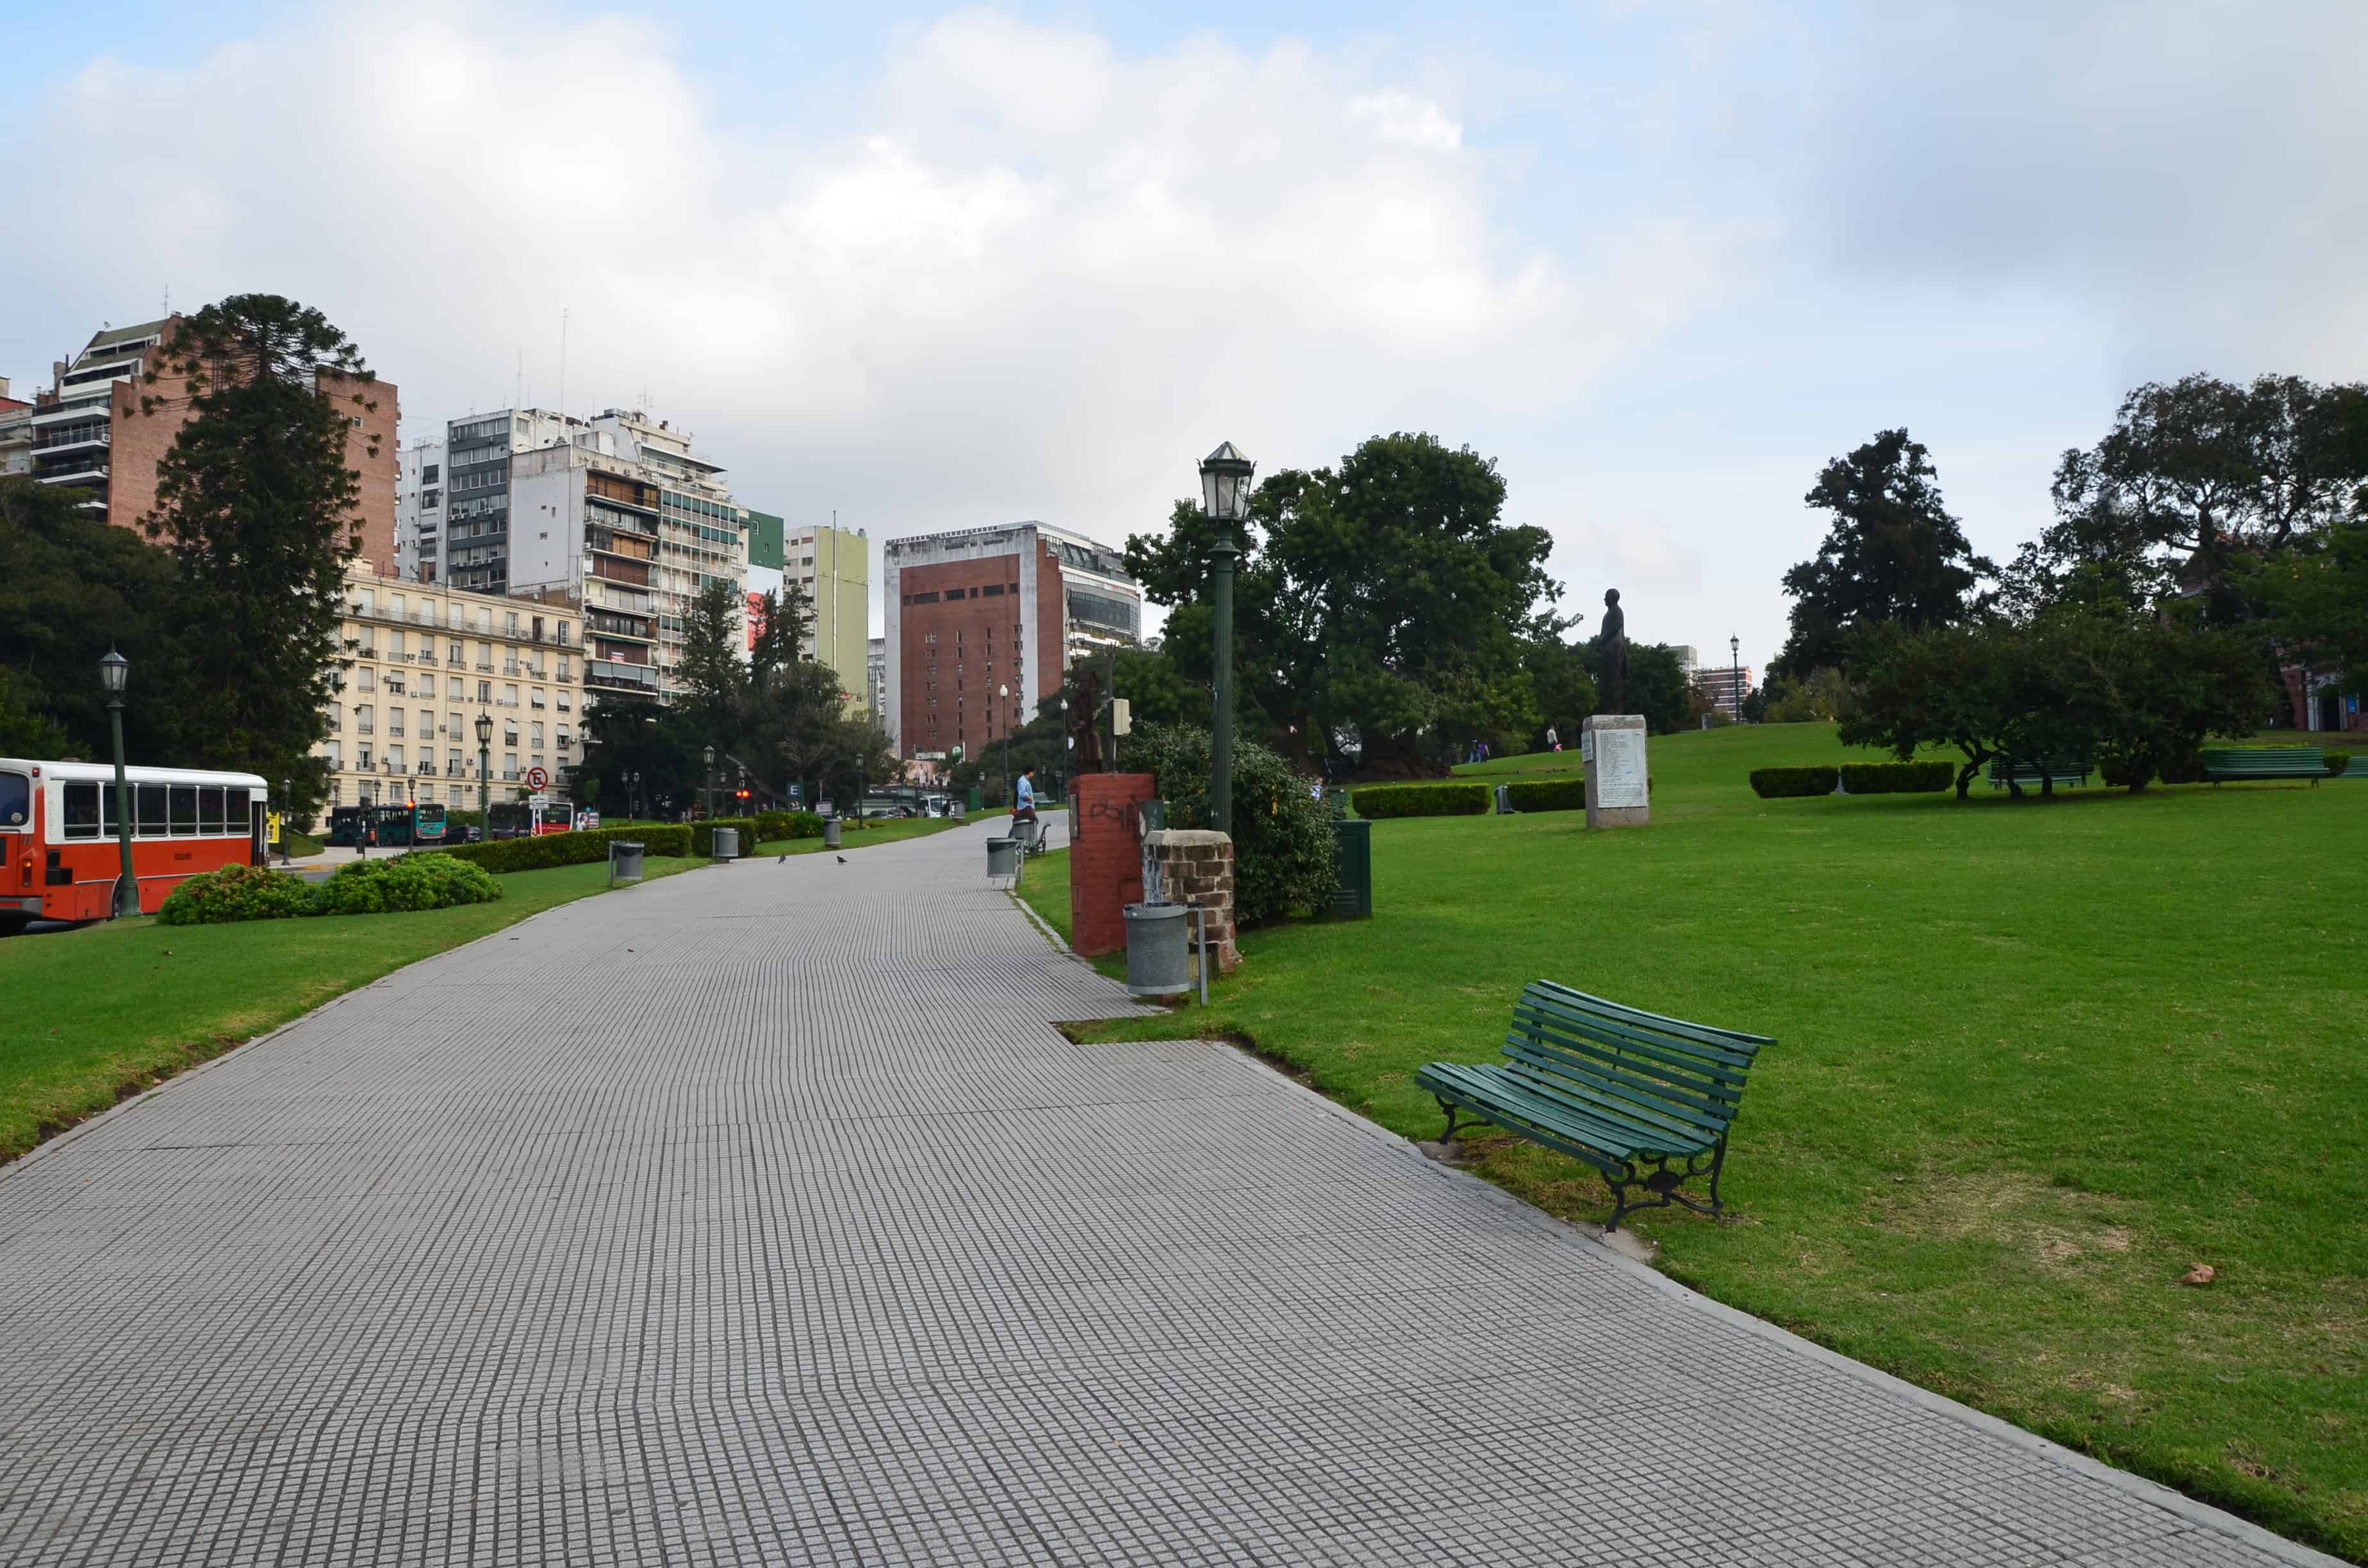 Plaza Intendente Torcuato de Alvear in Recoleta, Buenos Aires, Argentina